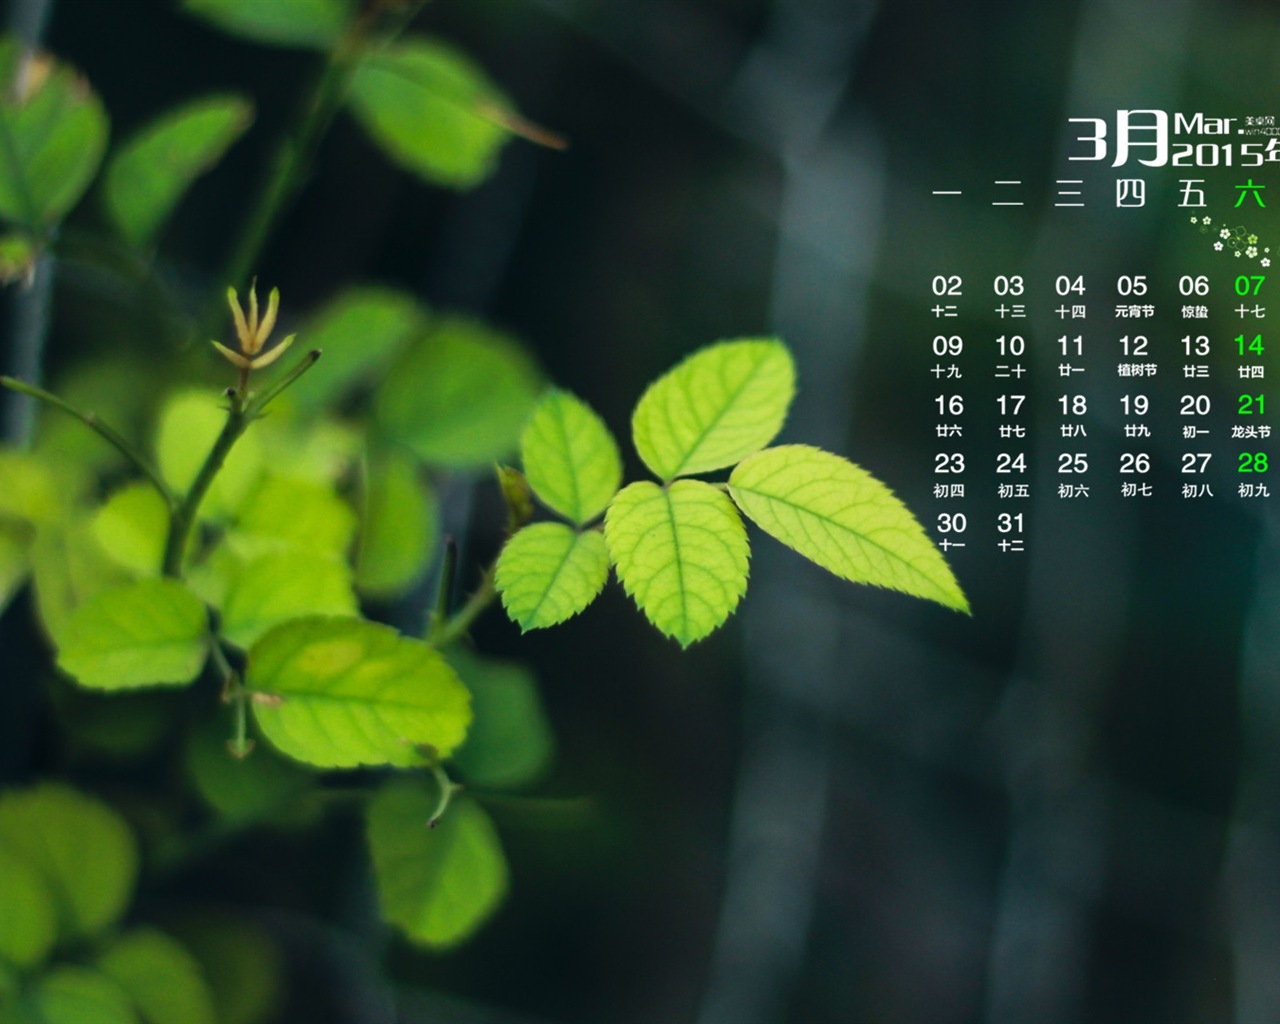 March 2015 Calendar wallpaper (1) #19 - 1280x1024